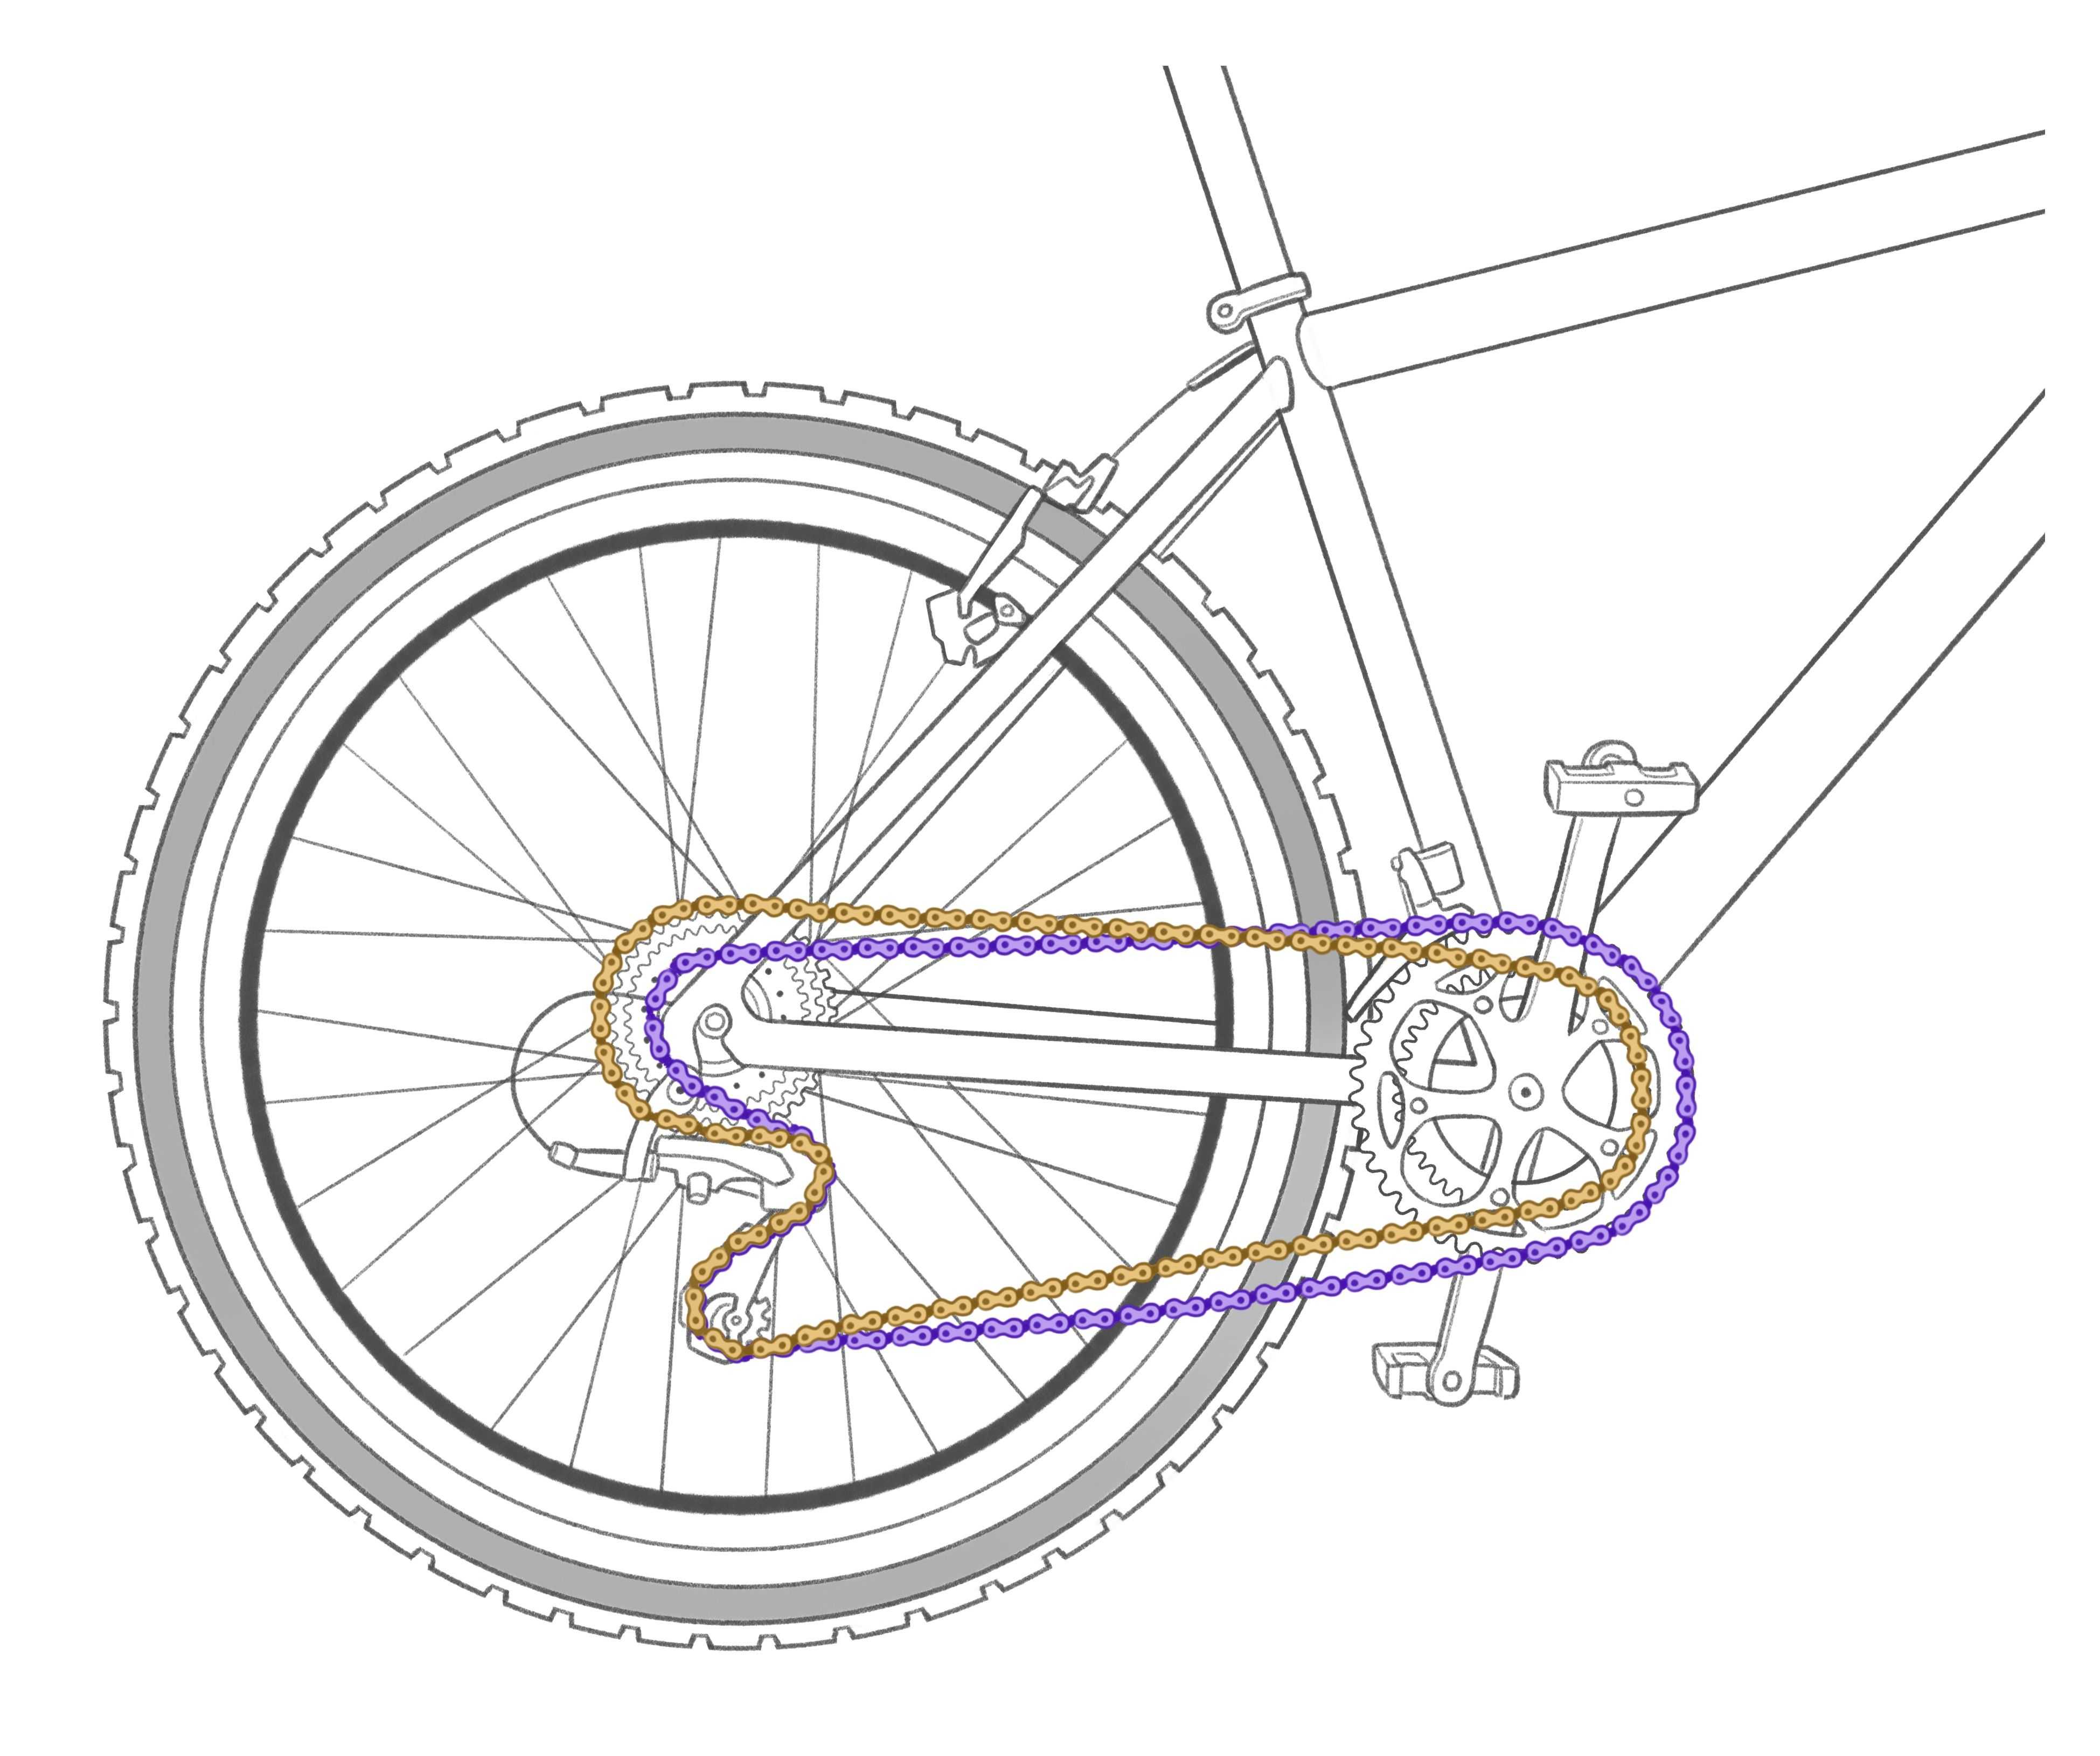 Велосипед с цепью на переднем колесе. Трансмиссия велосипеда схема. Схема переключателя передач на велосипеде. Велосипедная трансмиссия чертеж. Передачи велосипеда стелс схема.